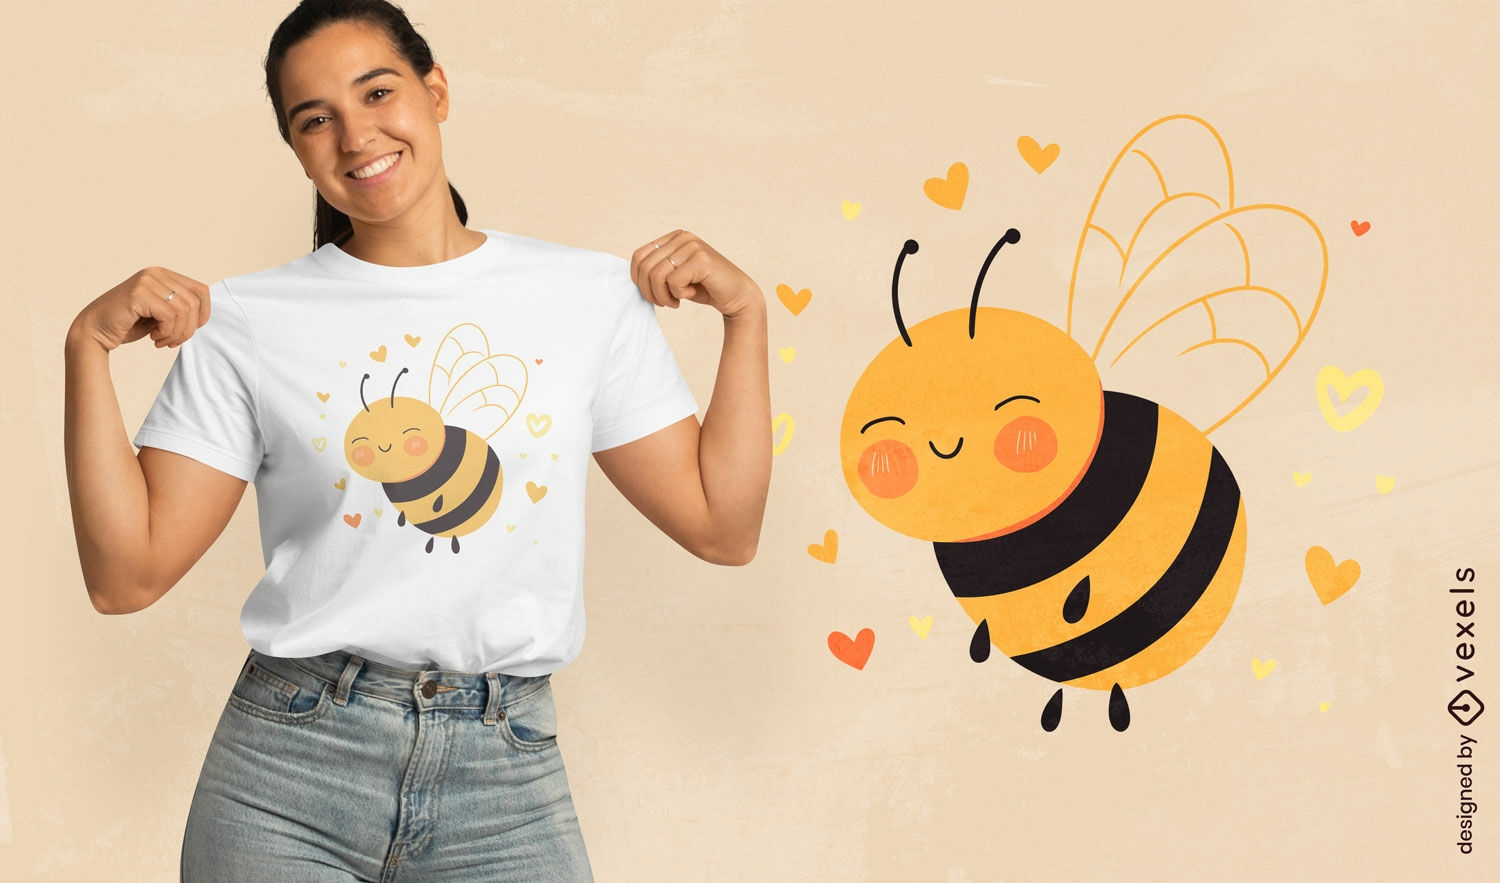 Diseño de camiseta con gráfico de abeja alegre.